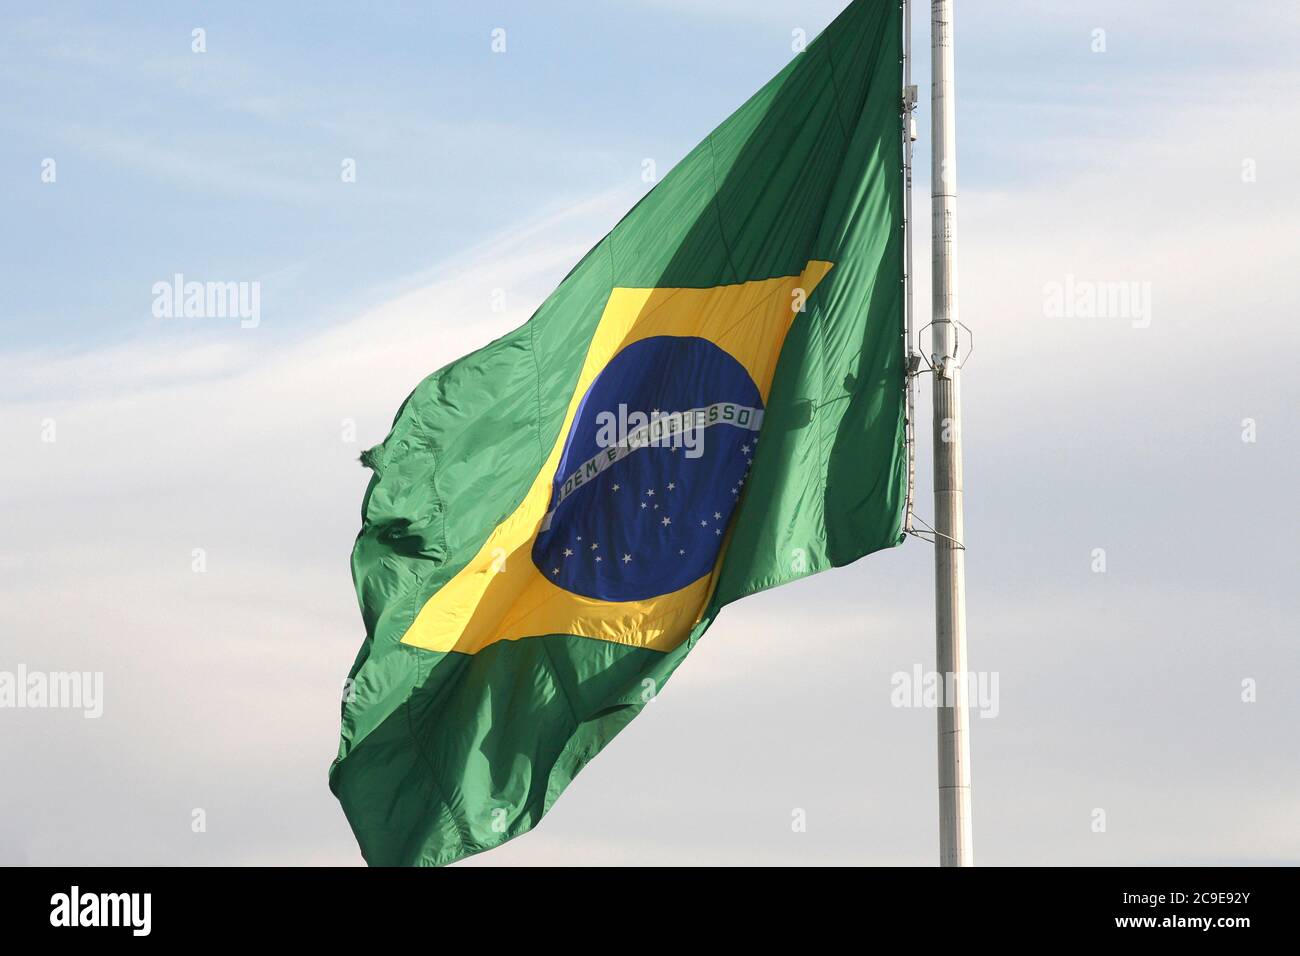 Le drapeau national du Brésil flotte dans le vent Banque D'Images